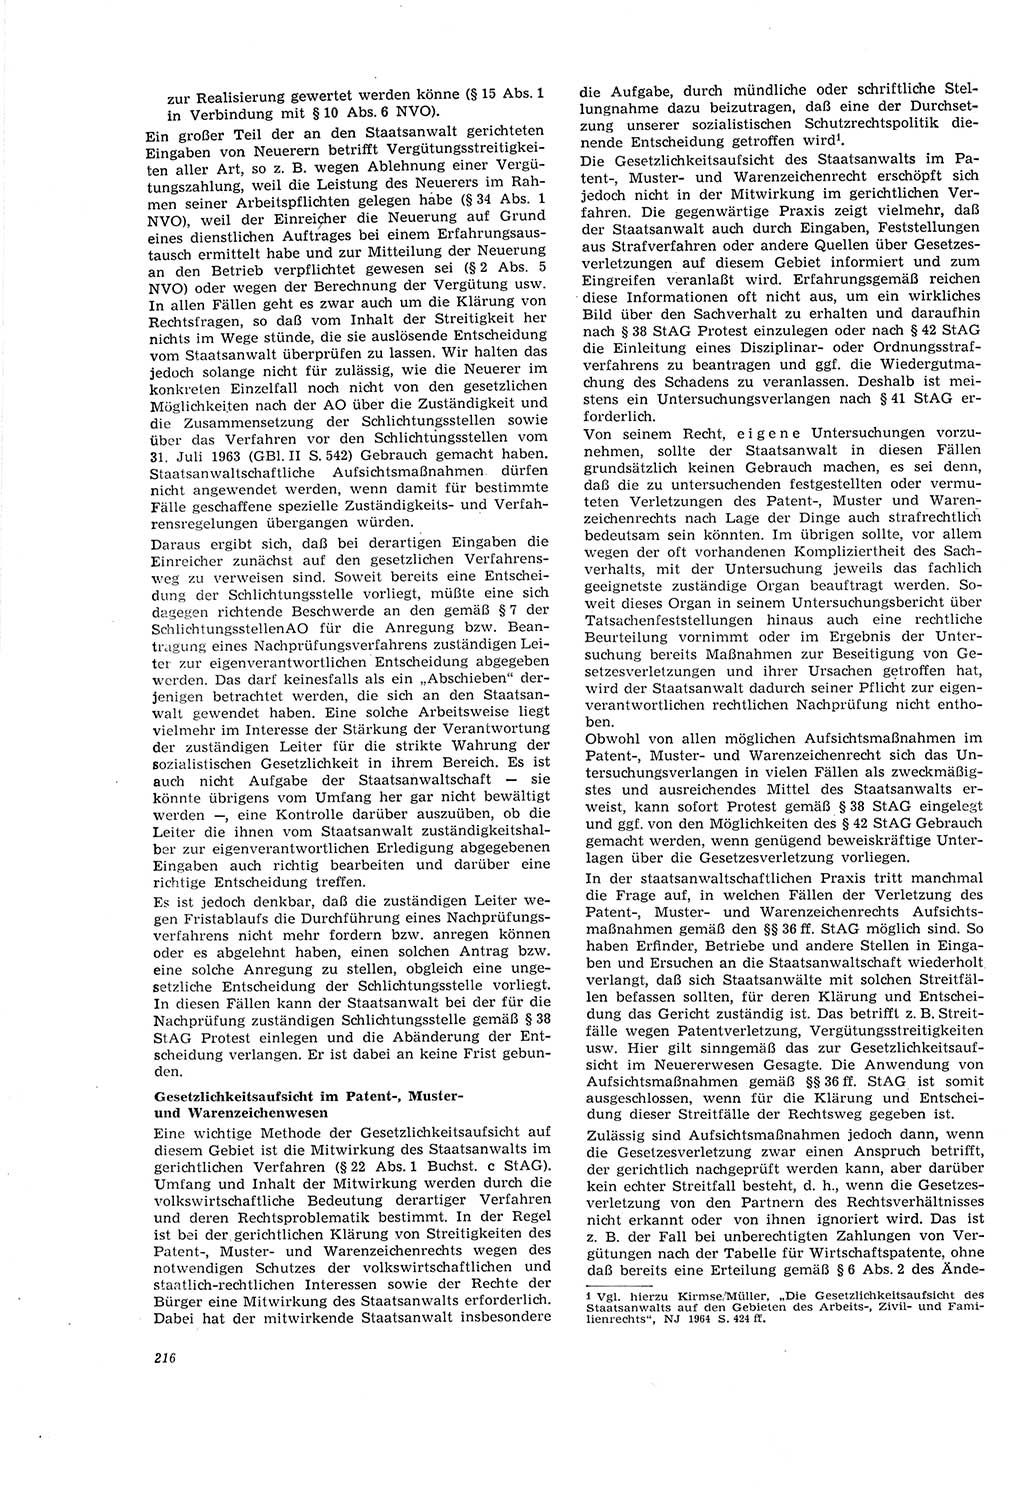 Neue Justiz (NJ), Zeitschrift für Recht und Rechtswissenschaft [Deutsche Demokratische Republik (DDR)], 20. Jahrgang 1966, Seite 216 (NJ DDR 1966, S. 216)